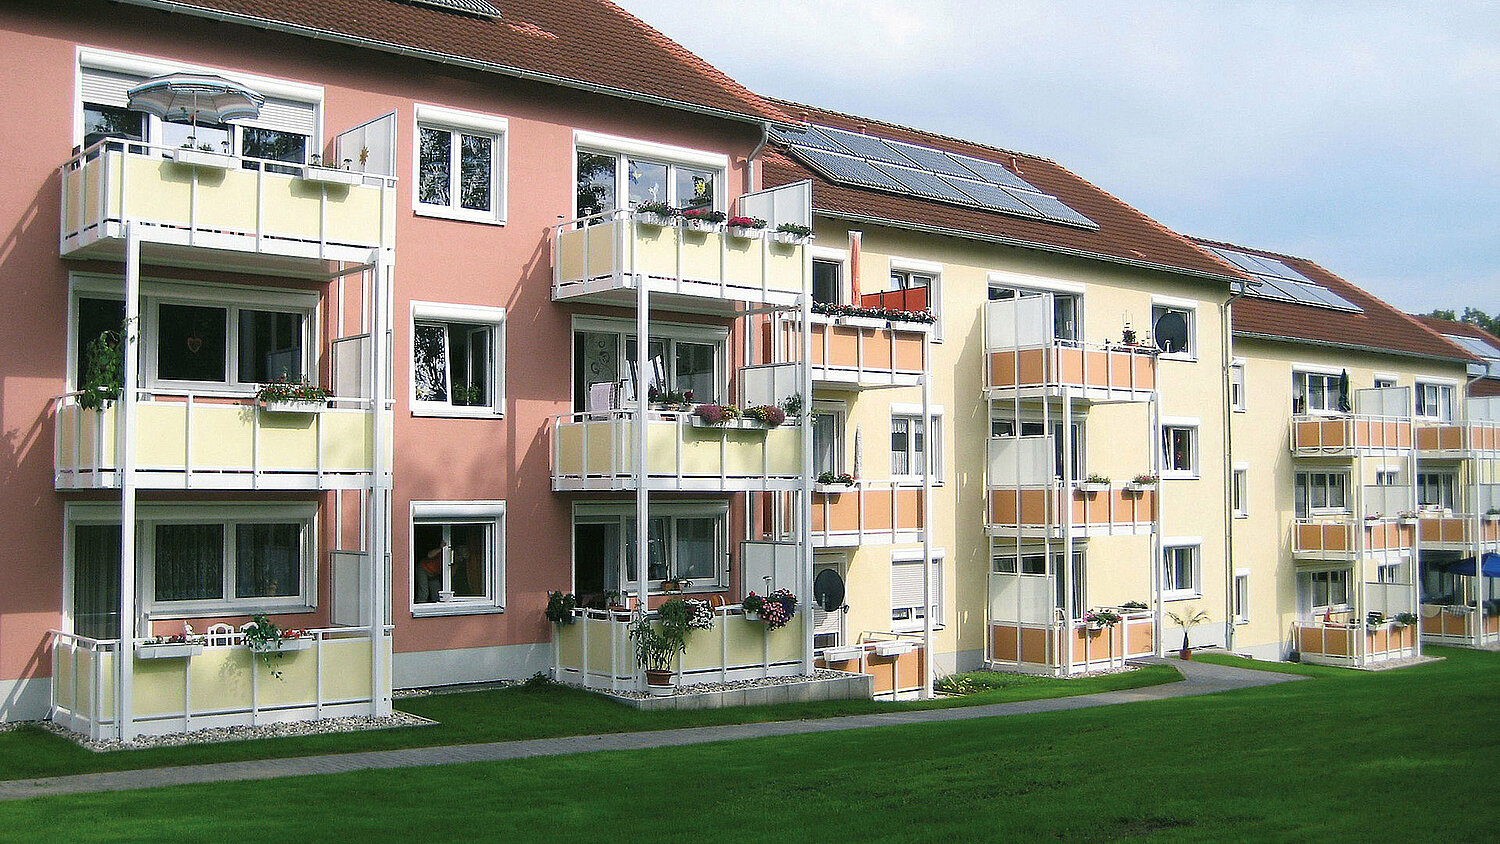 Dein Balkonbauer für Genossenschaften und Mehrfamilienhäuser